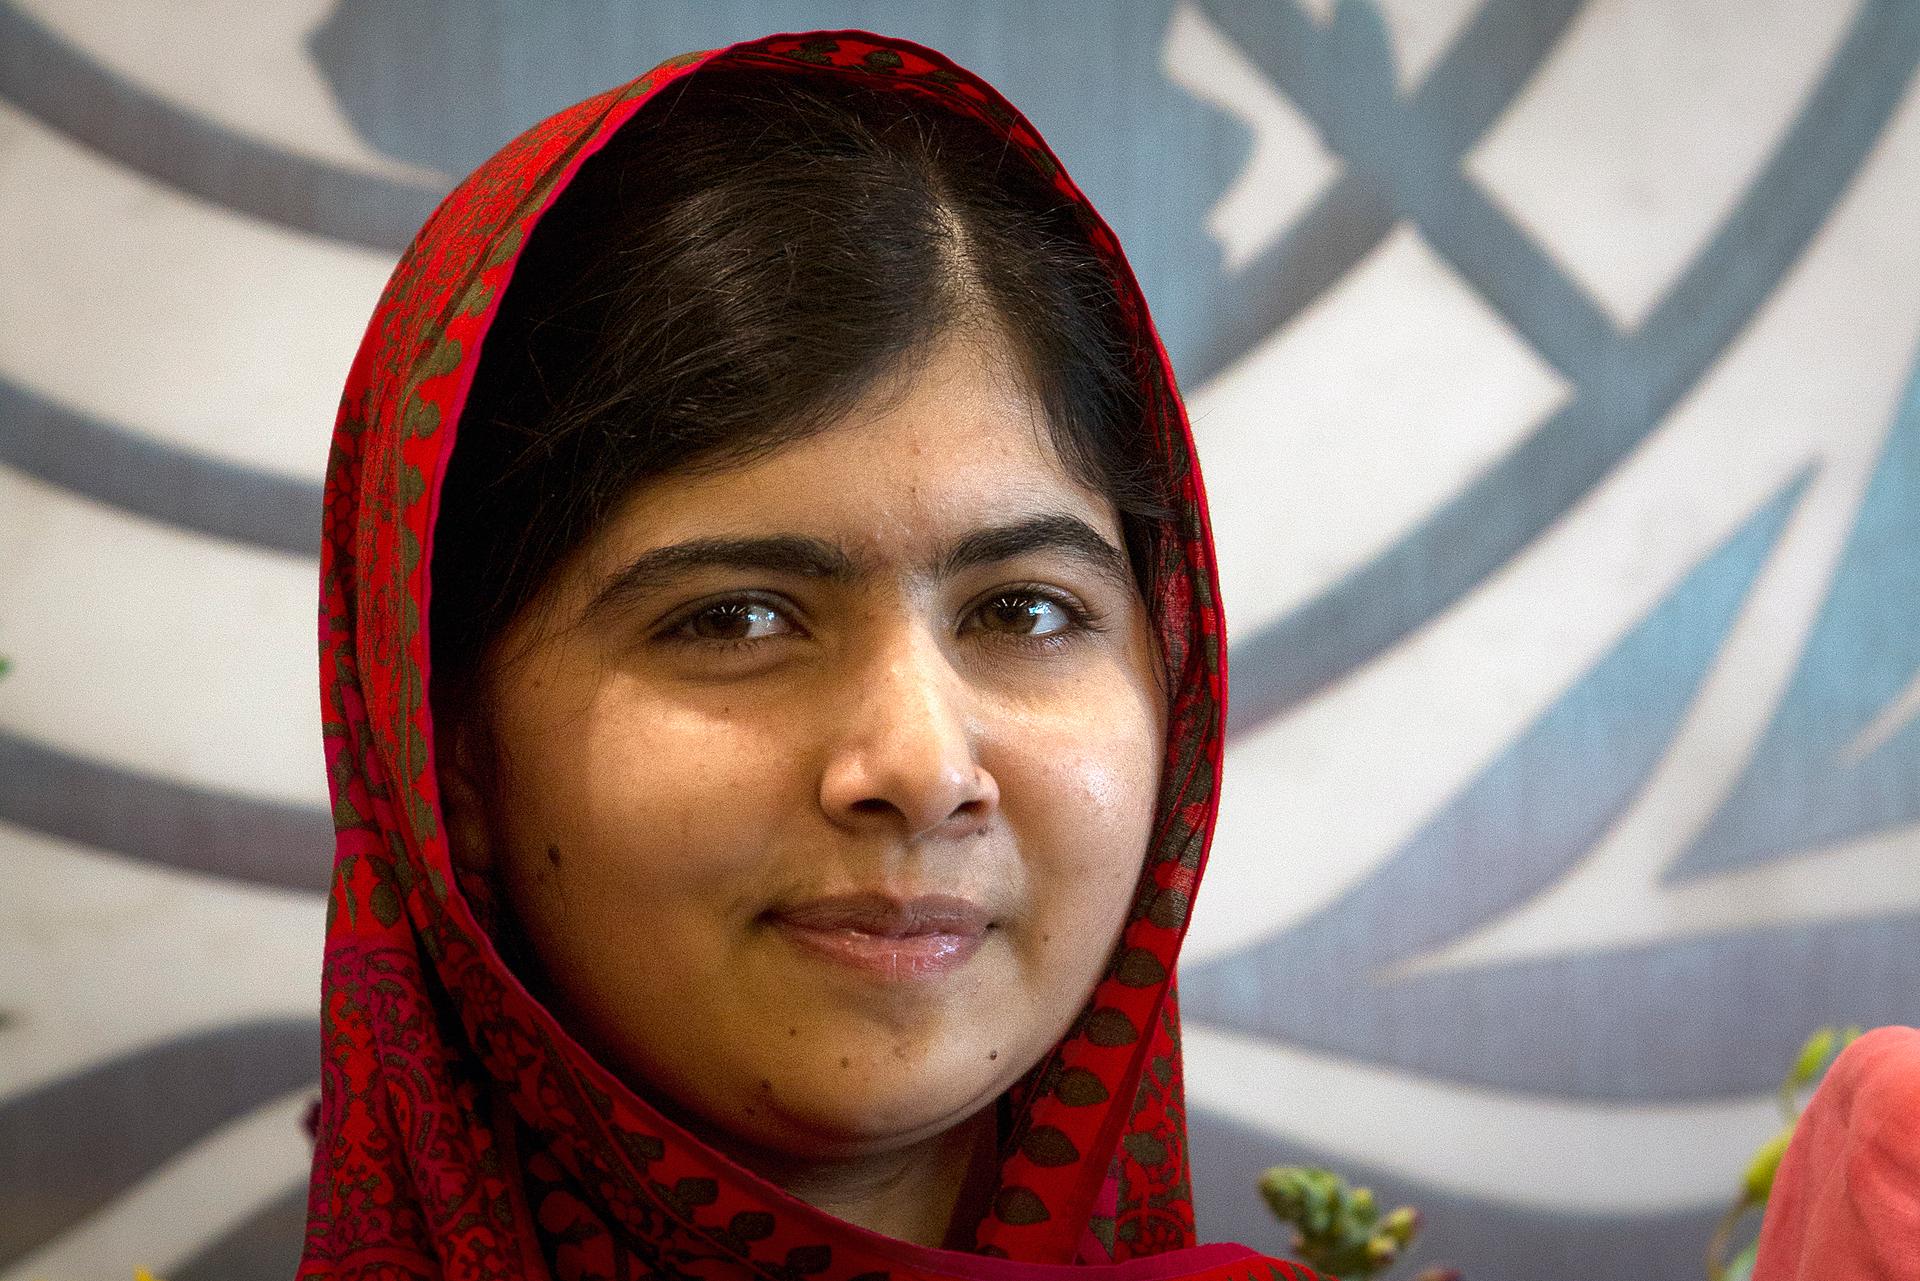 Malala Yousafzai at the UN